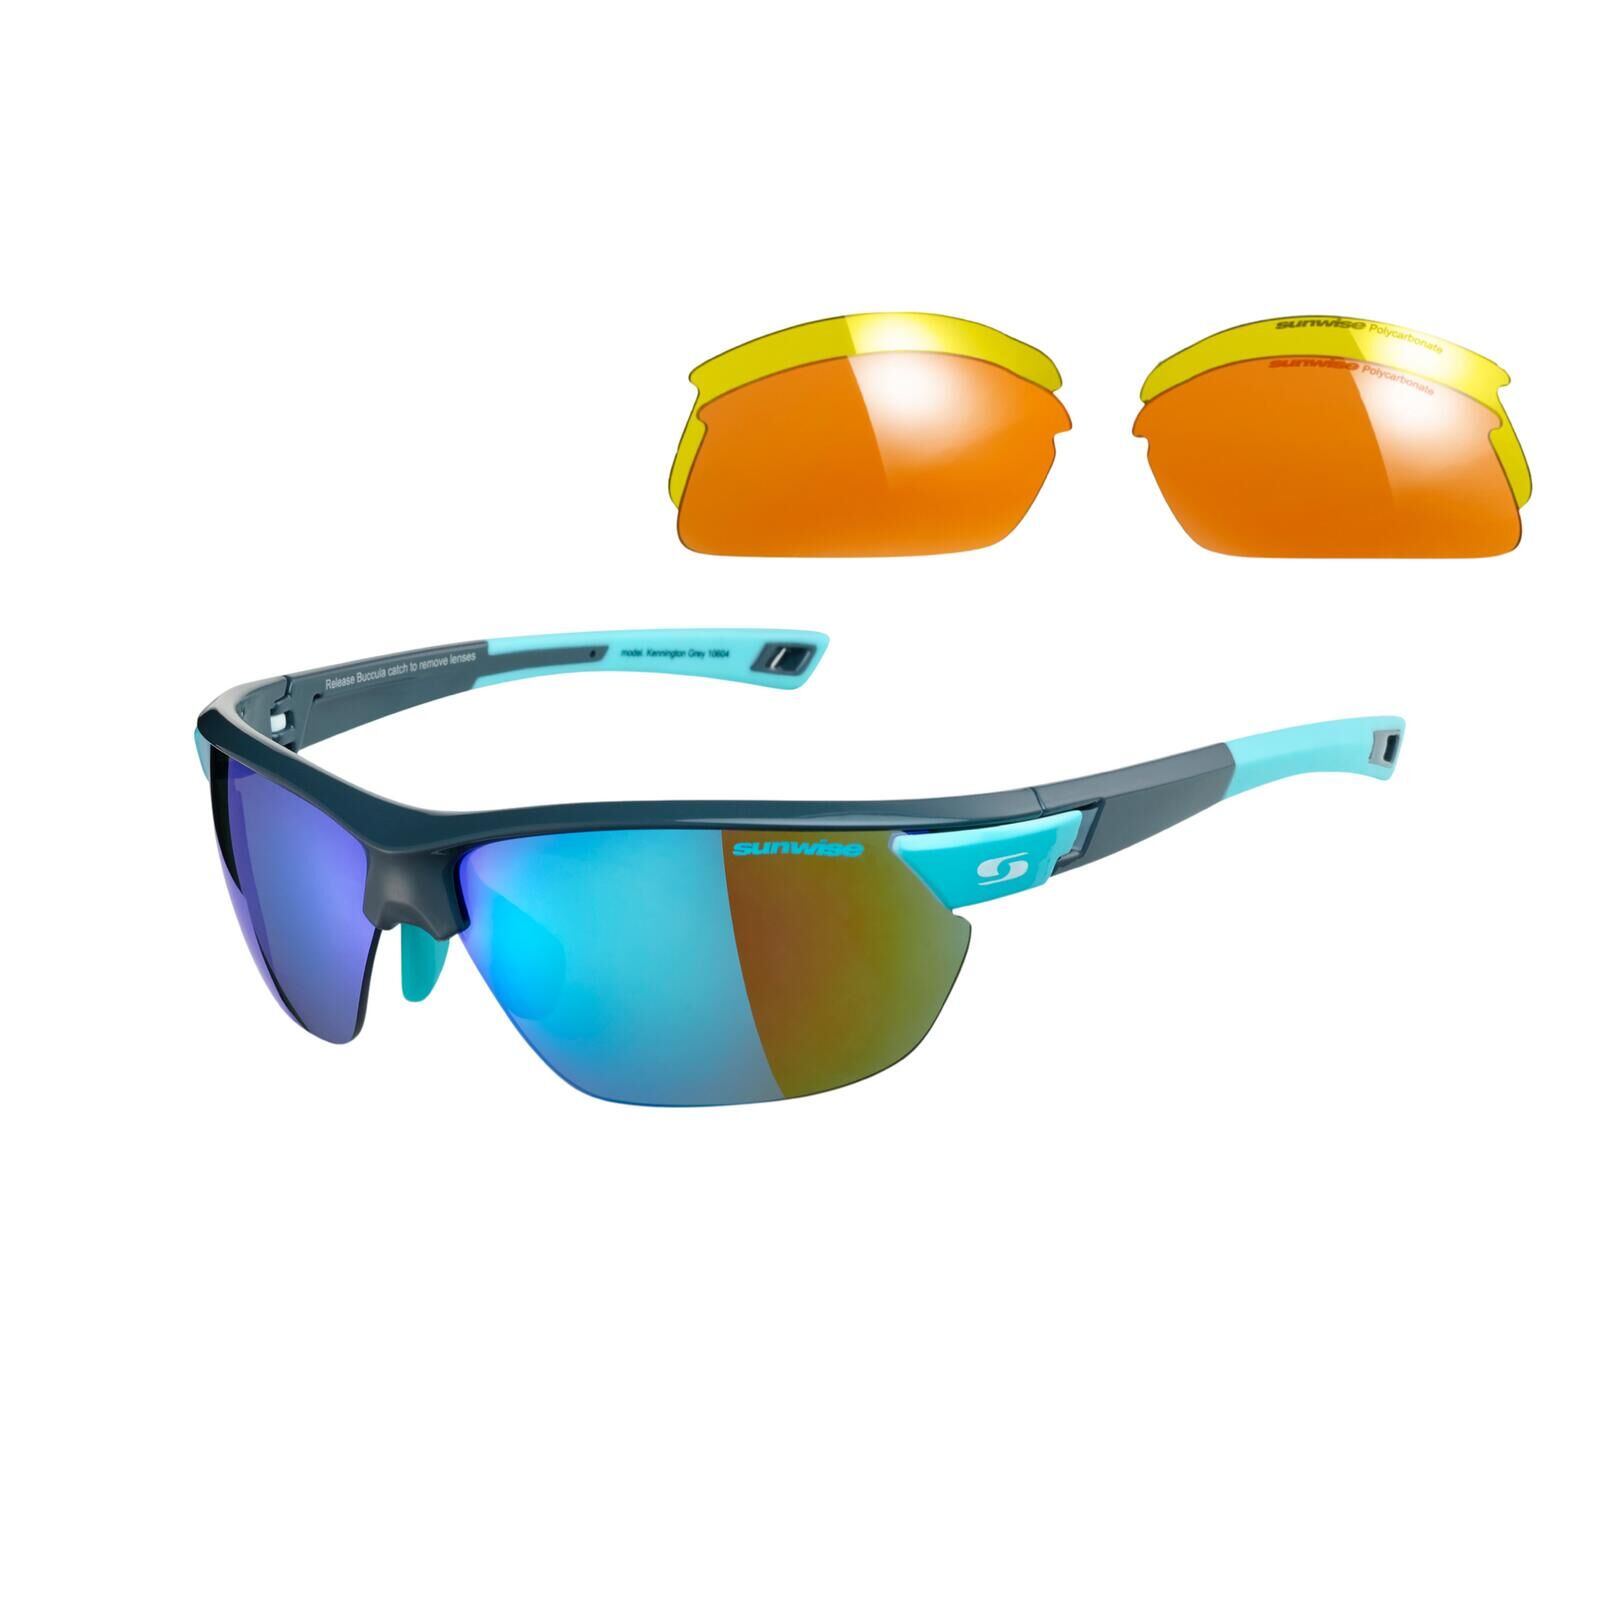 SUNWISE Kennington Sports Sunglasses - Category 1-3